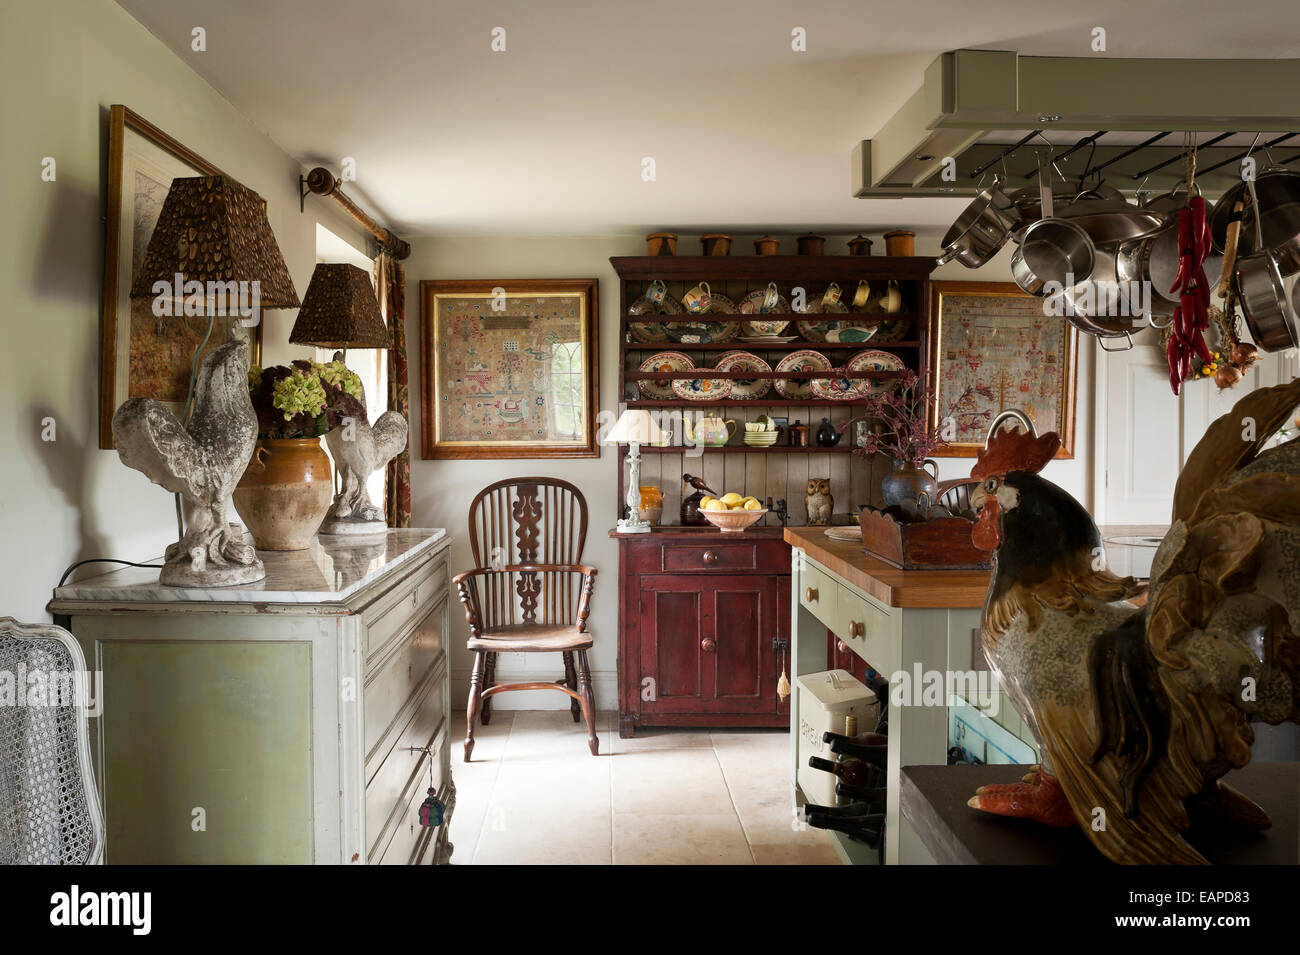 Cocina con muebles antiguos y lámparas de gallo dresser, tejo y olmo silla Windsor Foto de stock